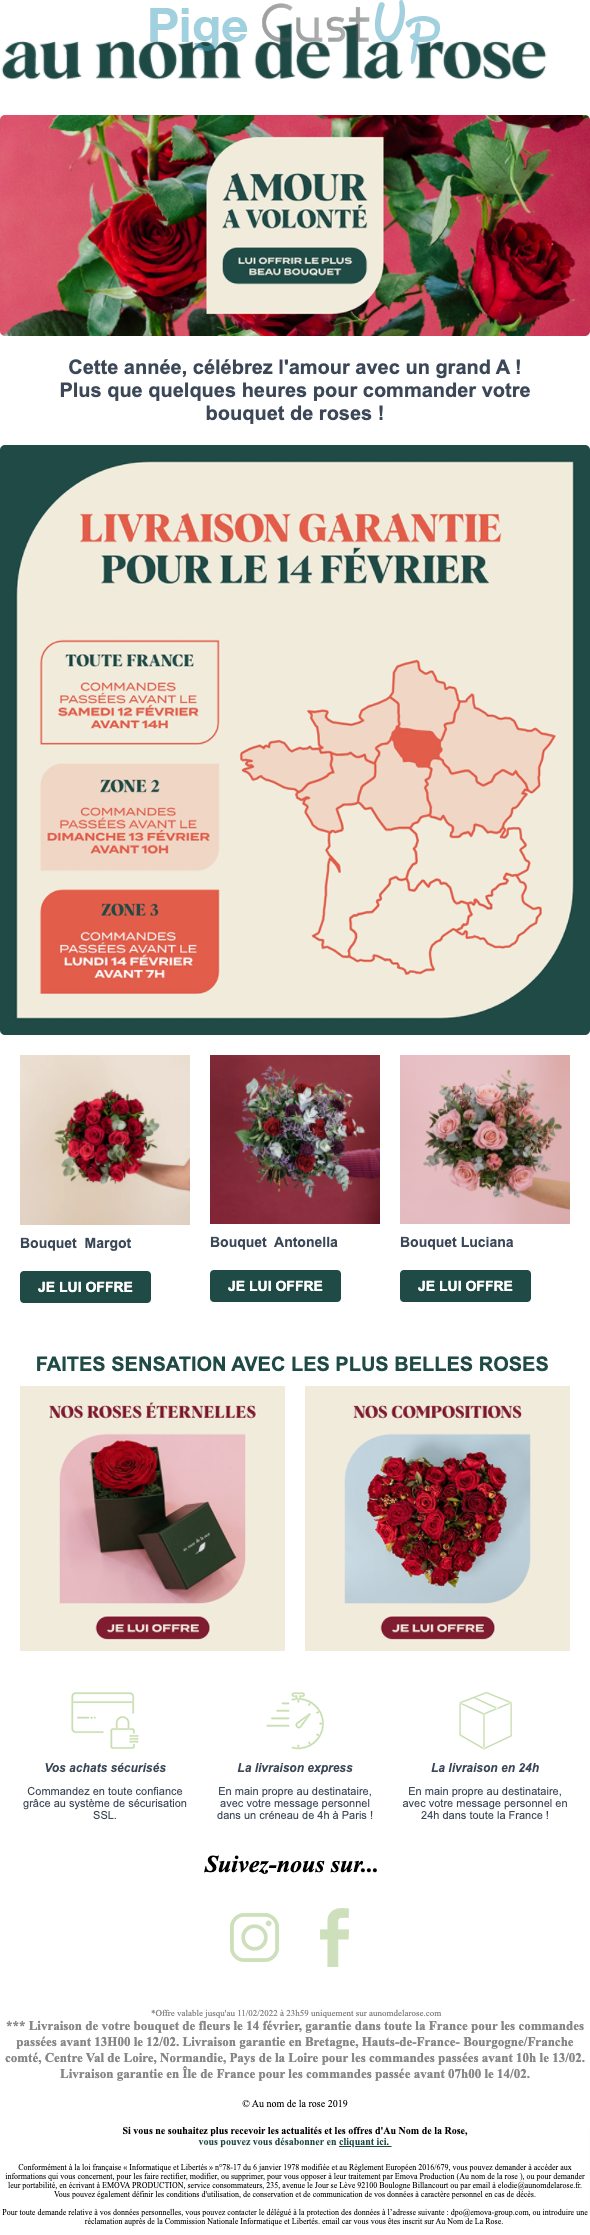 Exemple de Type de media   - Au nom de la rose - Marketing relationnel - Calendaire (Noël, St valentin, Vœux, …) - Marketing Acquisition - Derniers jours